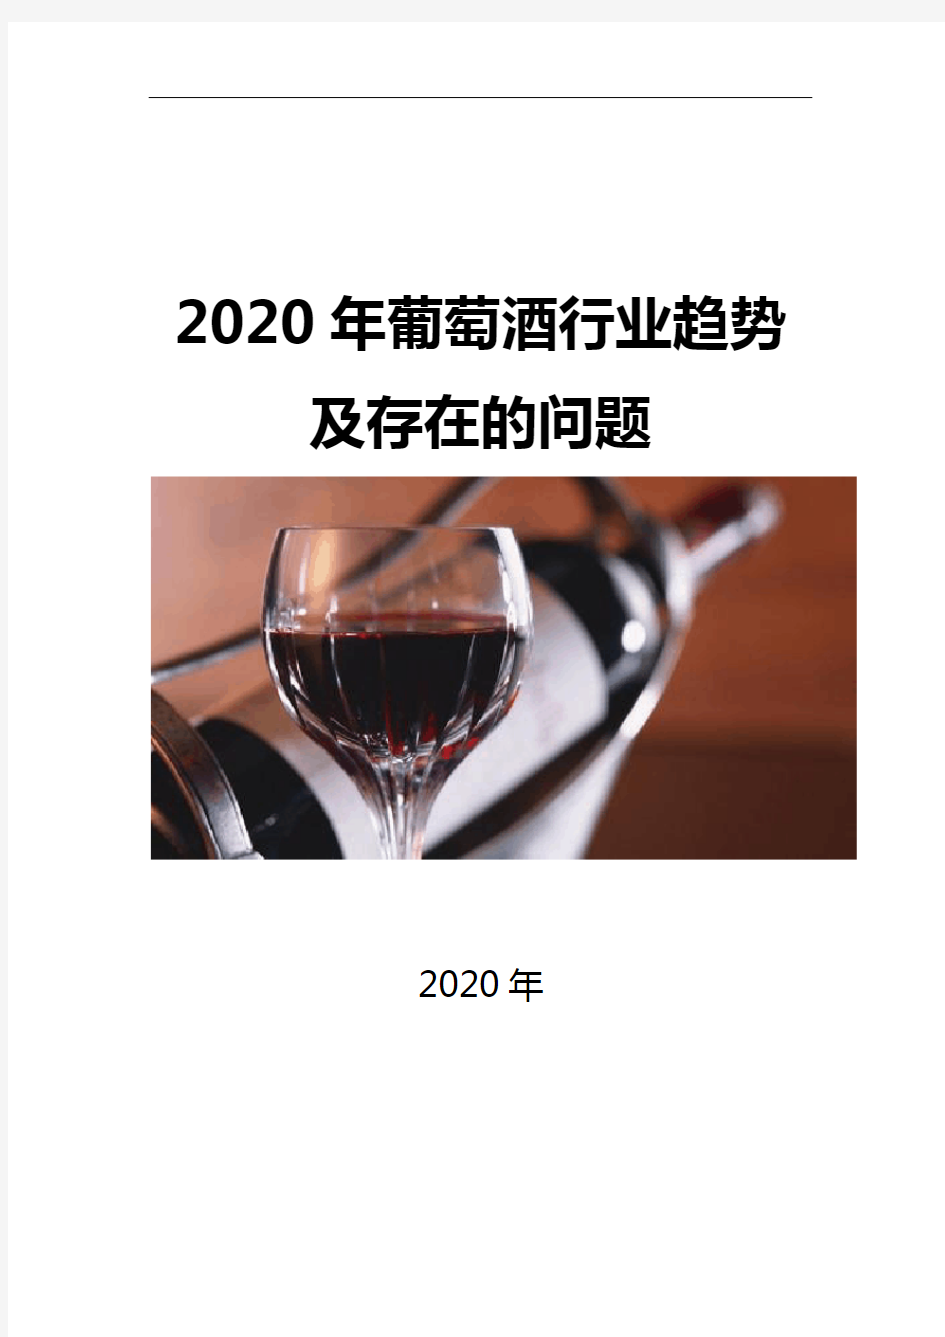 2020高端葡萄酒行业趋势及存在的问题